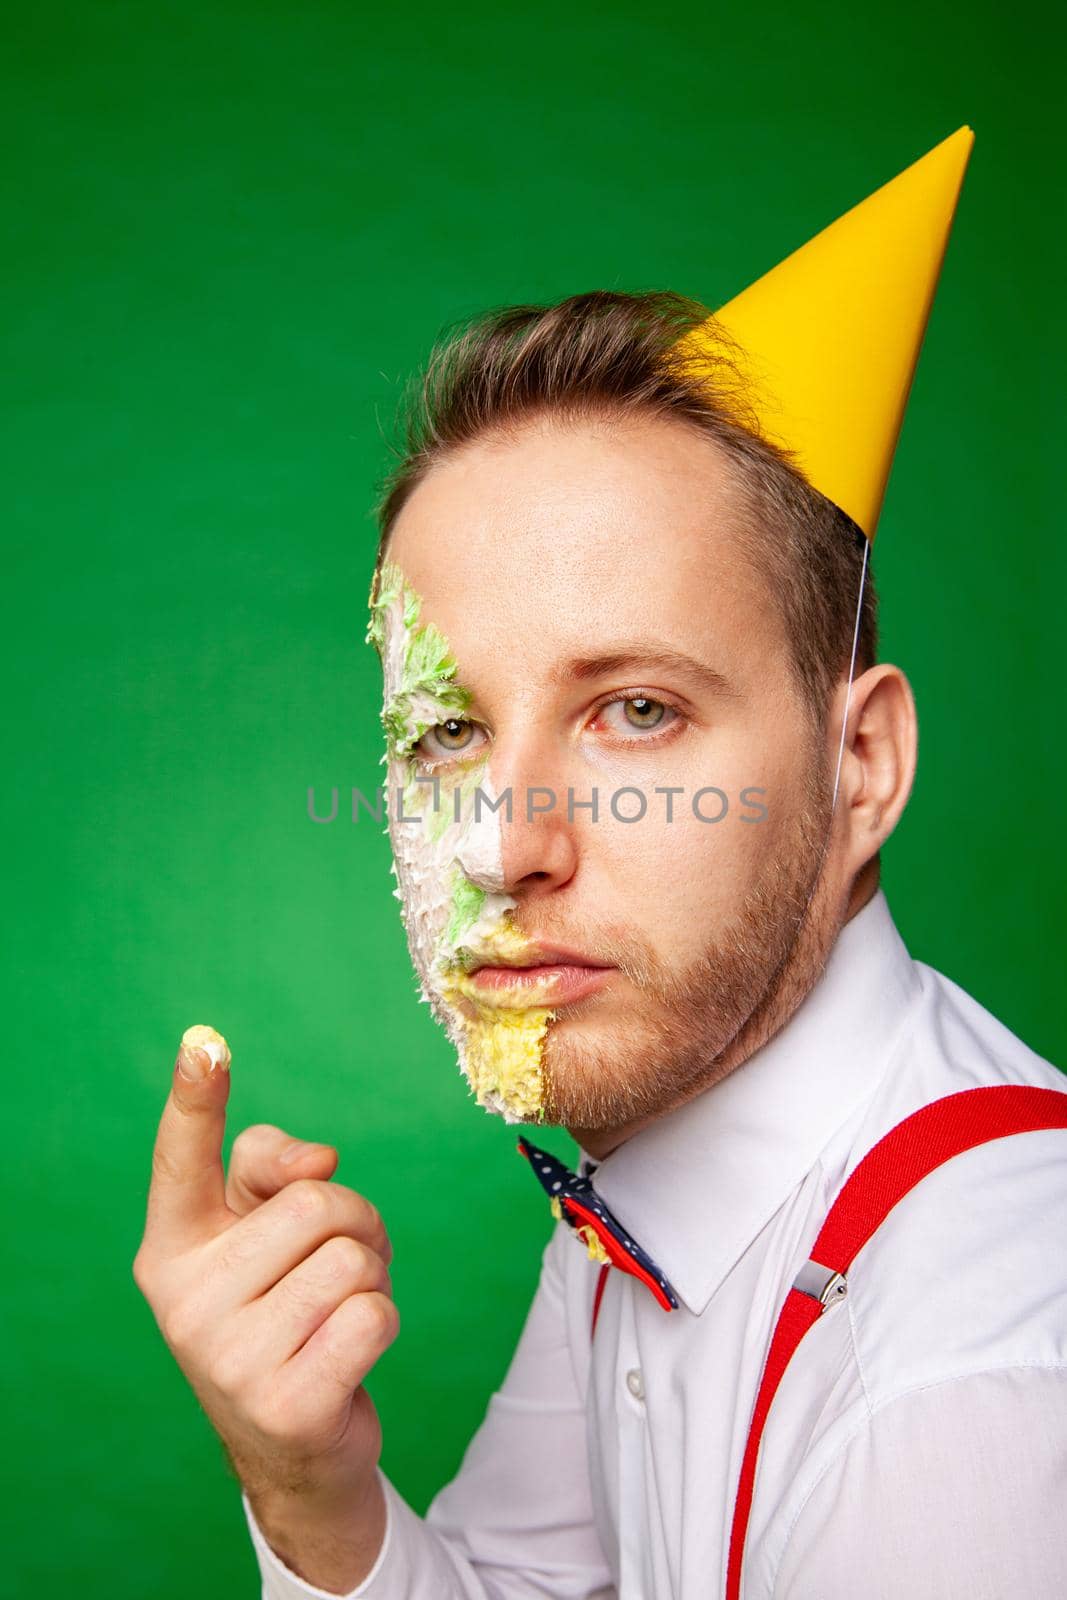 Man tasting birthday cake on green background by Julenochek